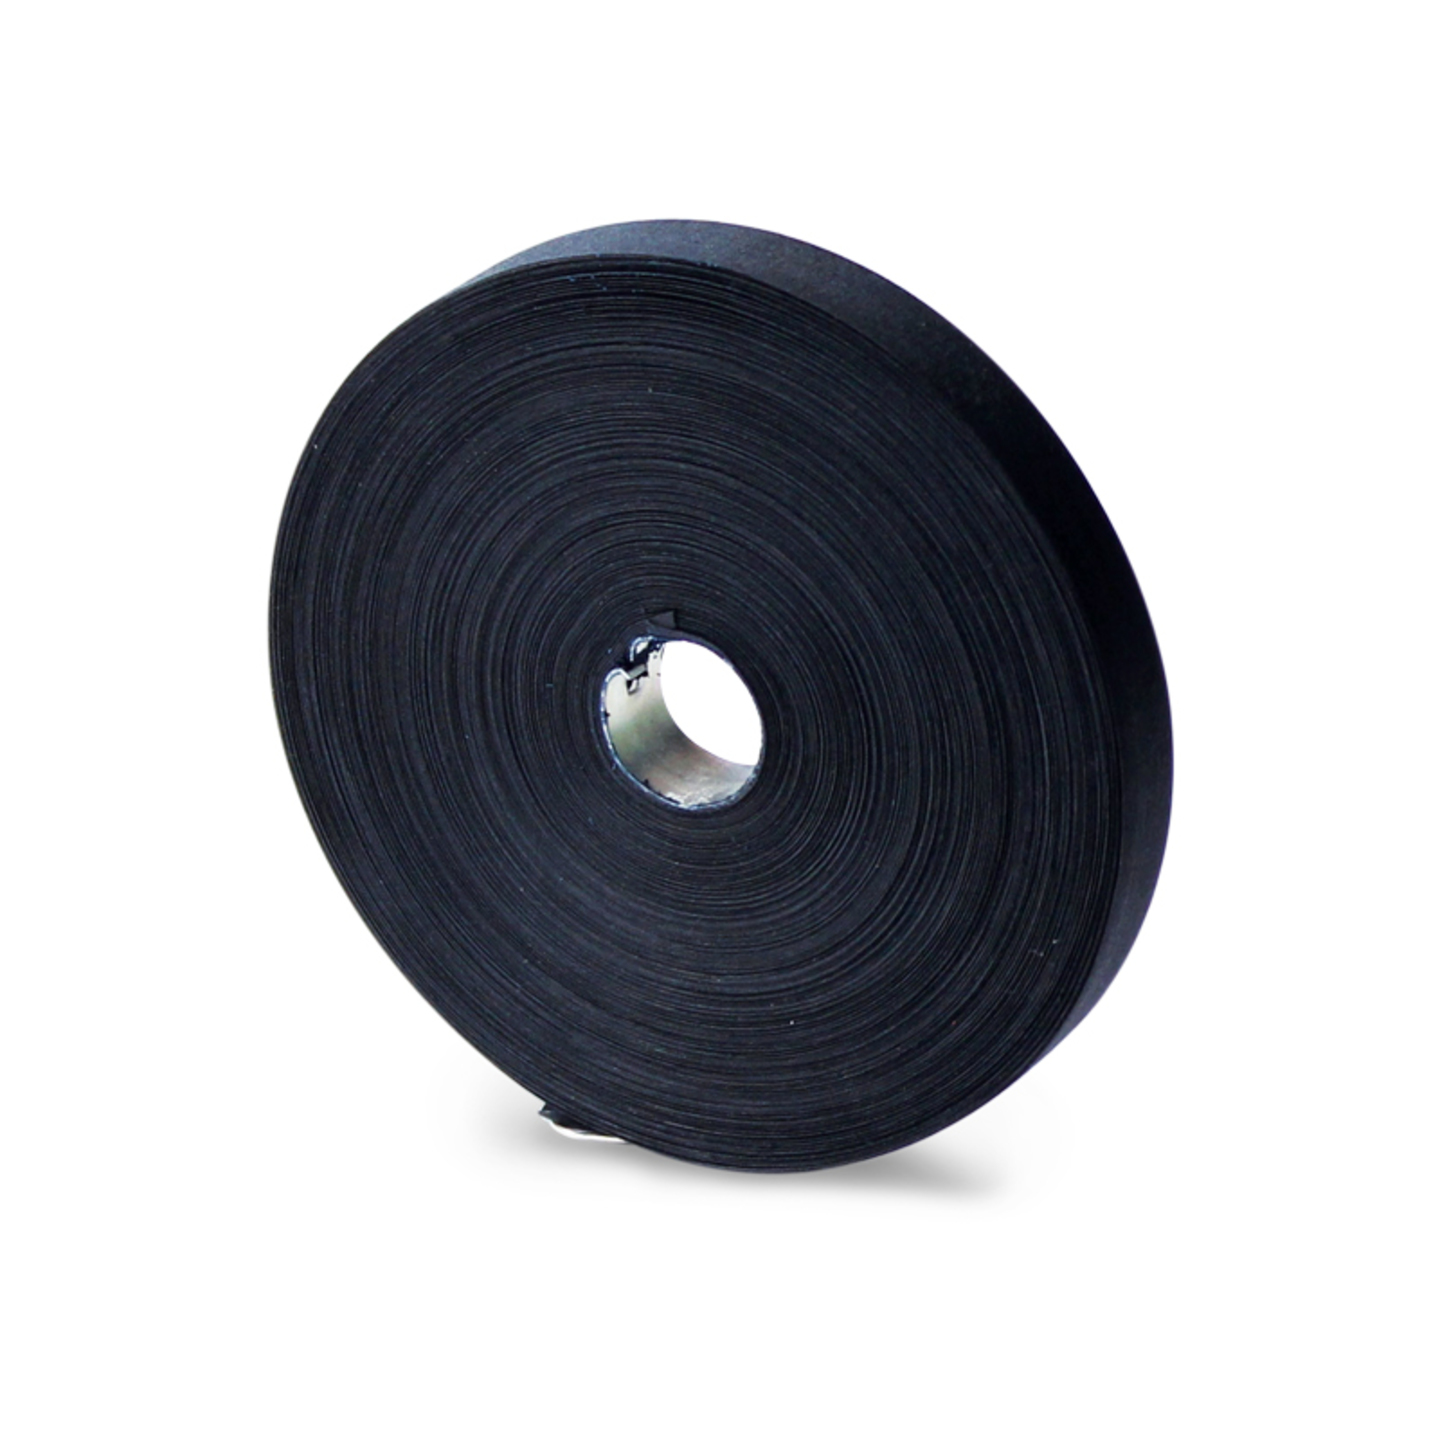 Shyamaraj Cotton Typing Ribbon 60 metres Long Black